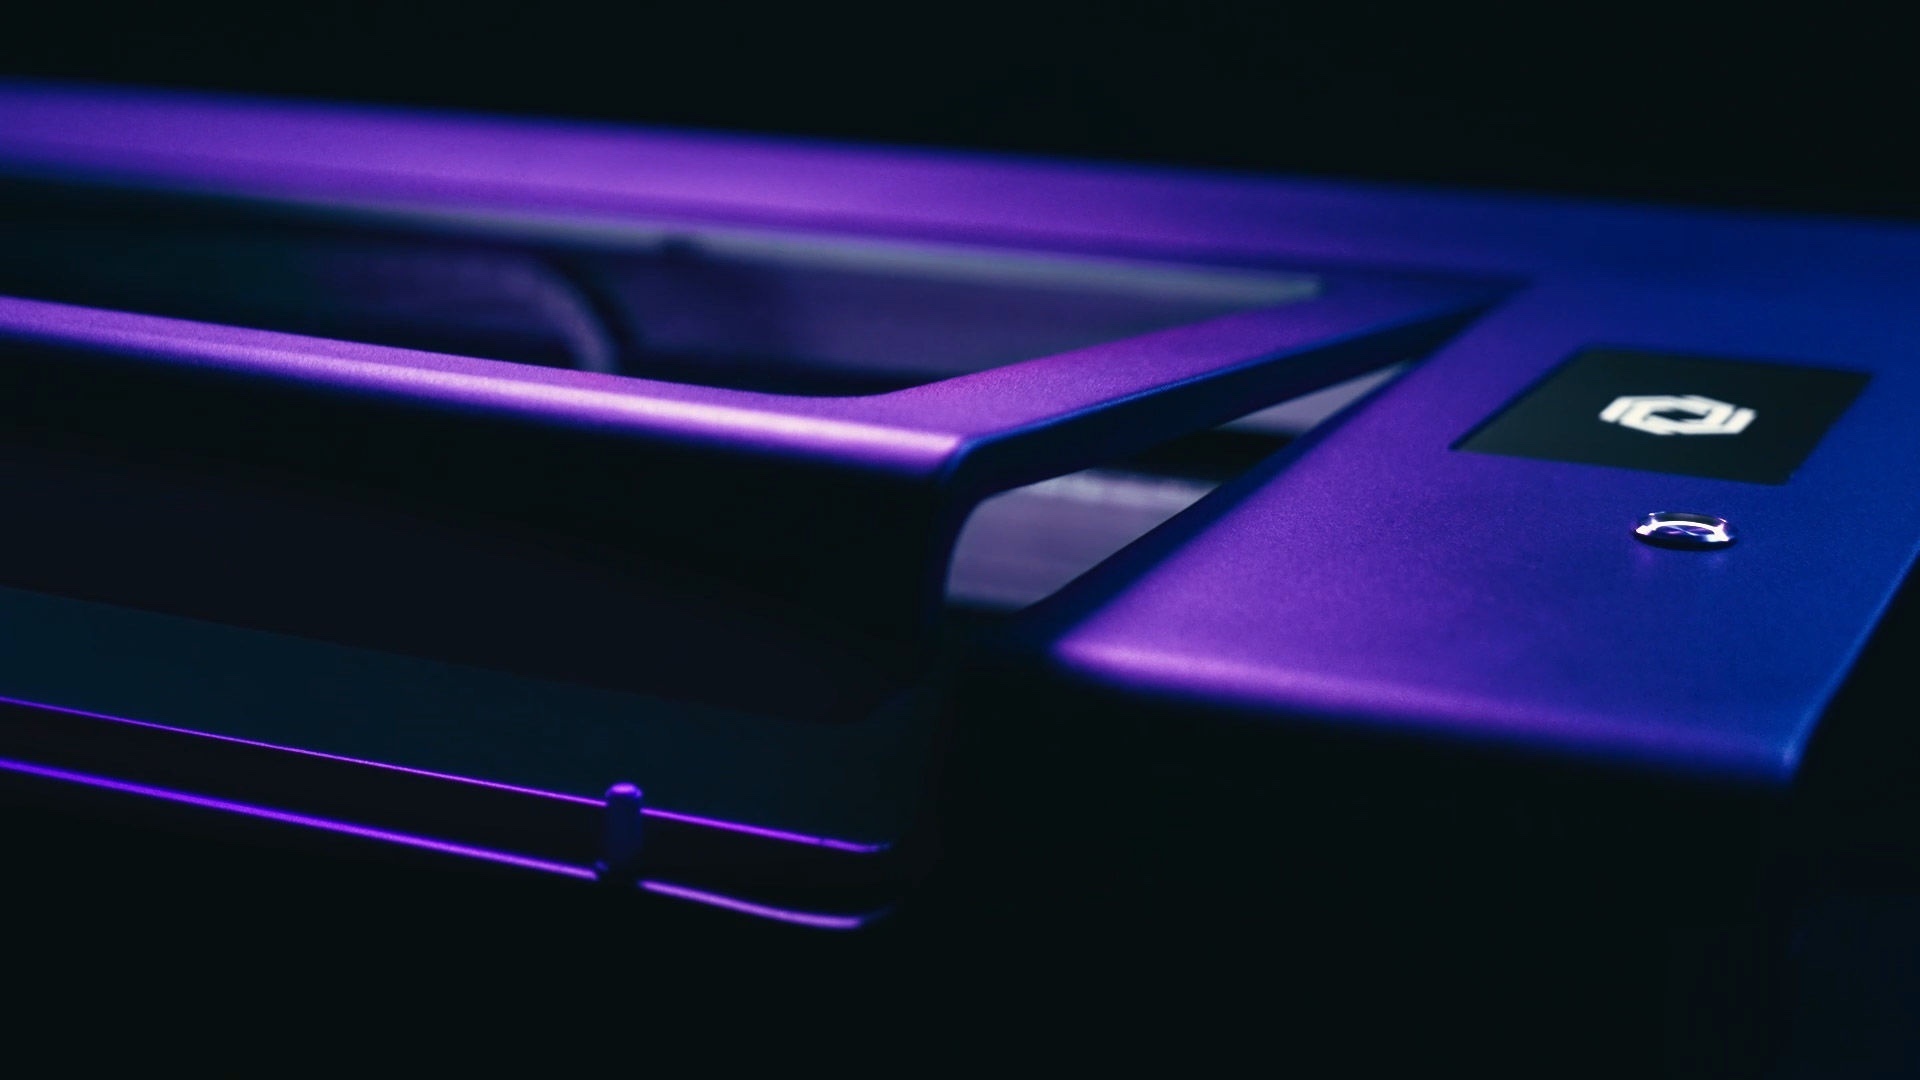 FLUX HEXA with an open lit in purple lighting.